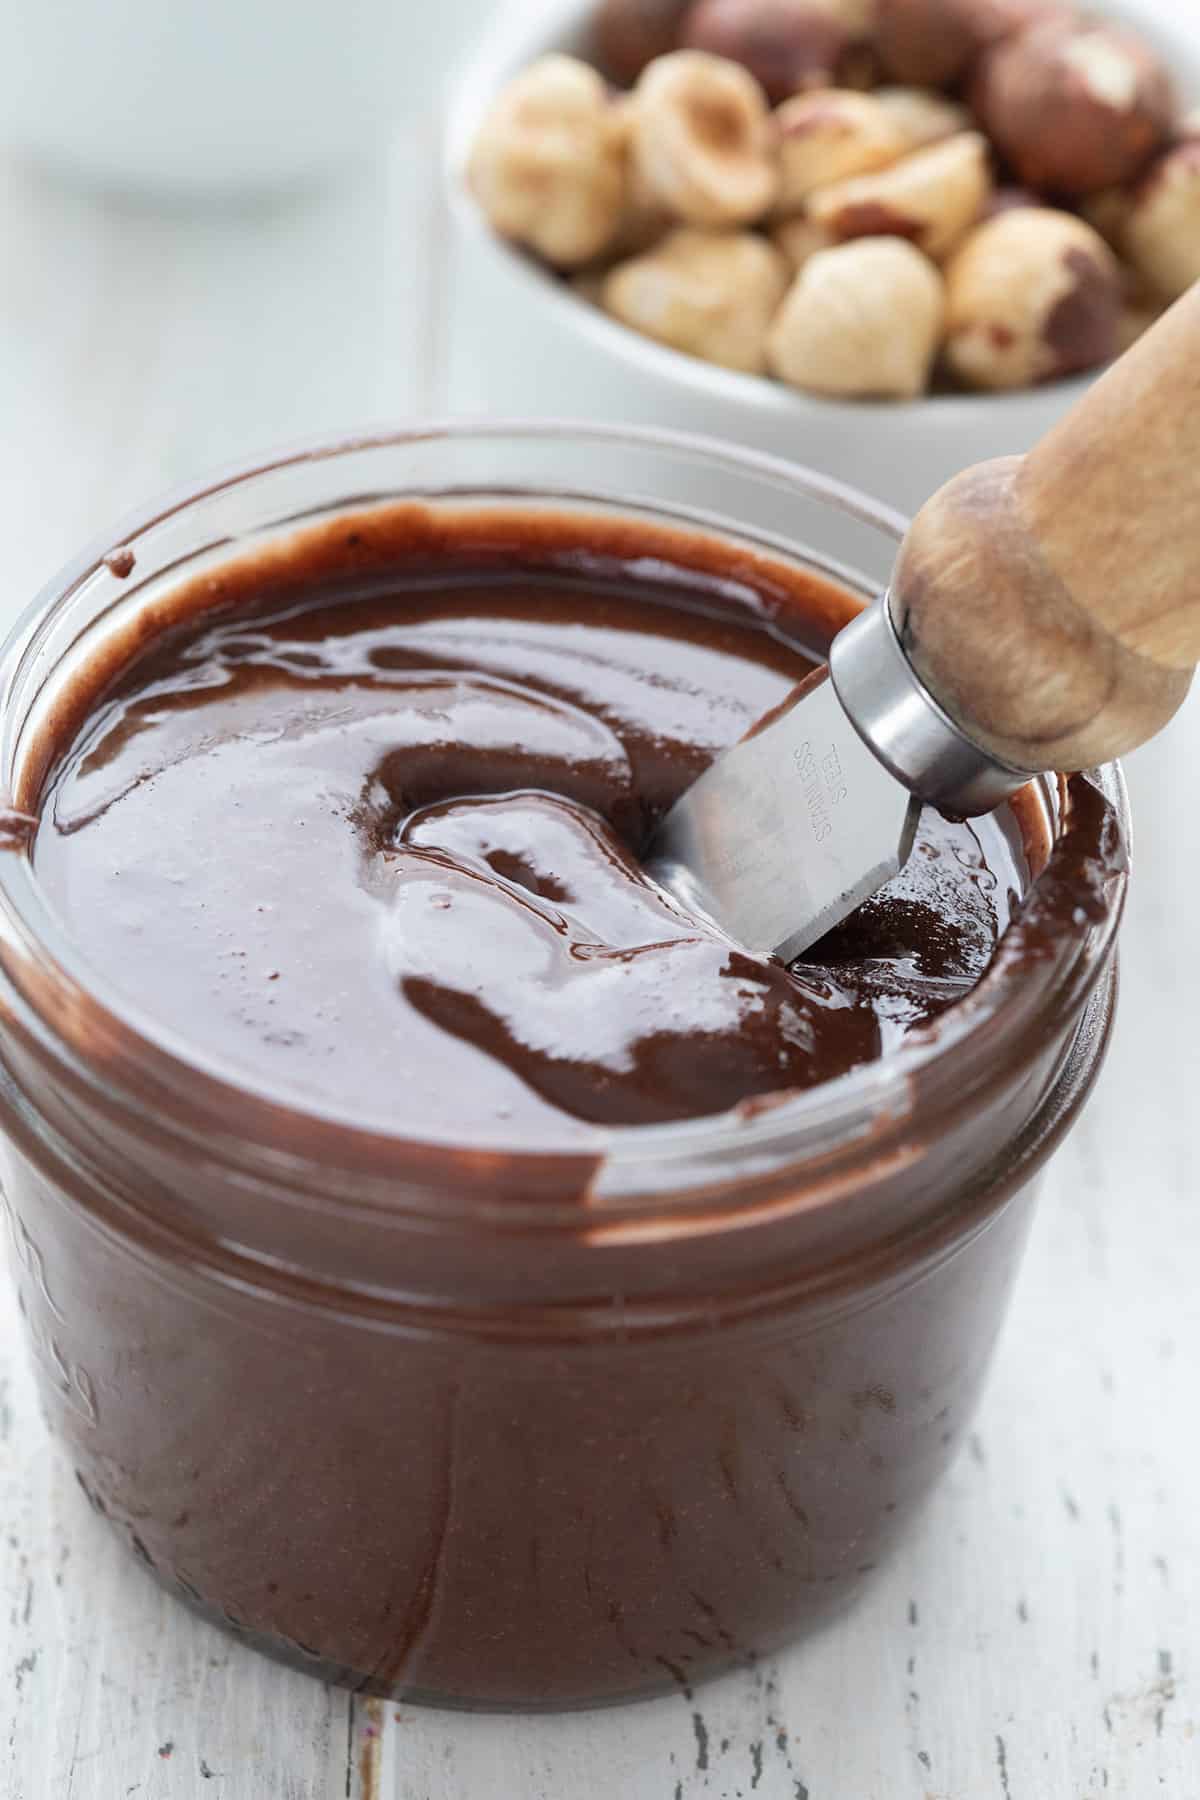 Nærbilde av en kniv som graver ned i en krukke med sukkerfri Nutella.